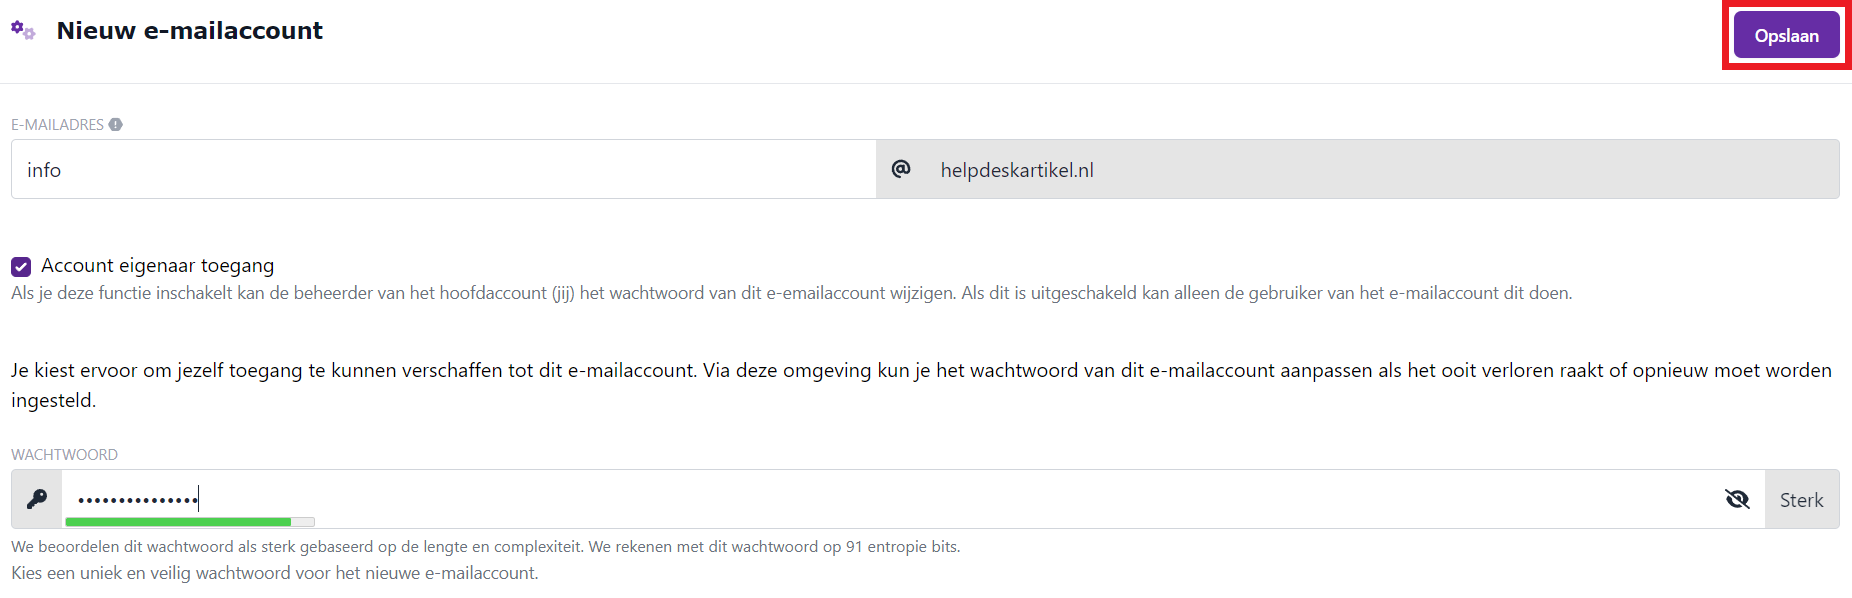 Nieuw e-mailaccount scherm - ingevuld met wachtwoord - opslaan.png